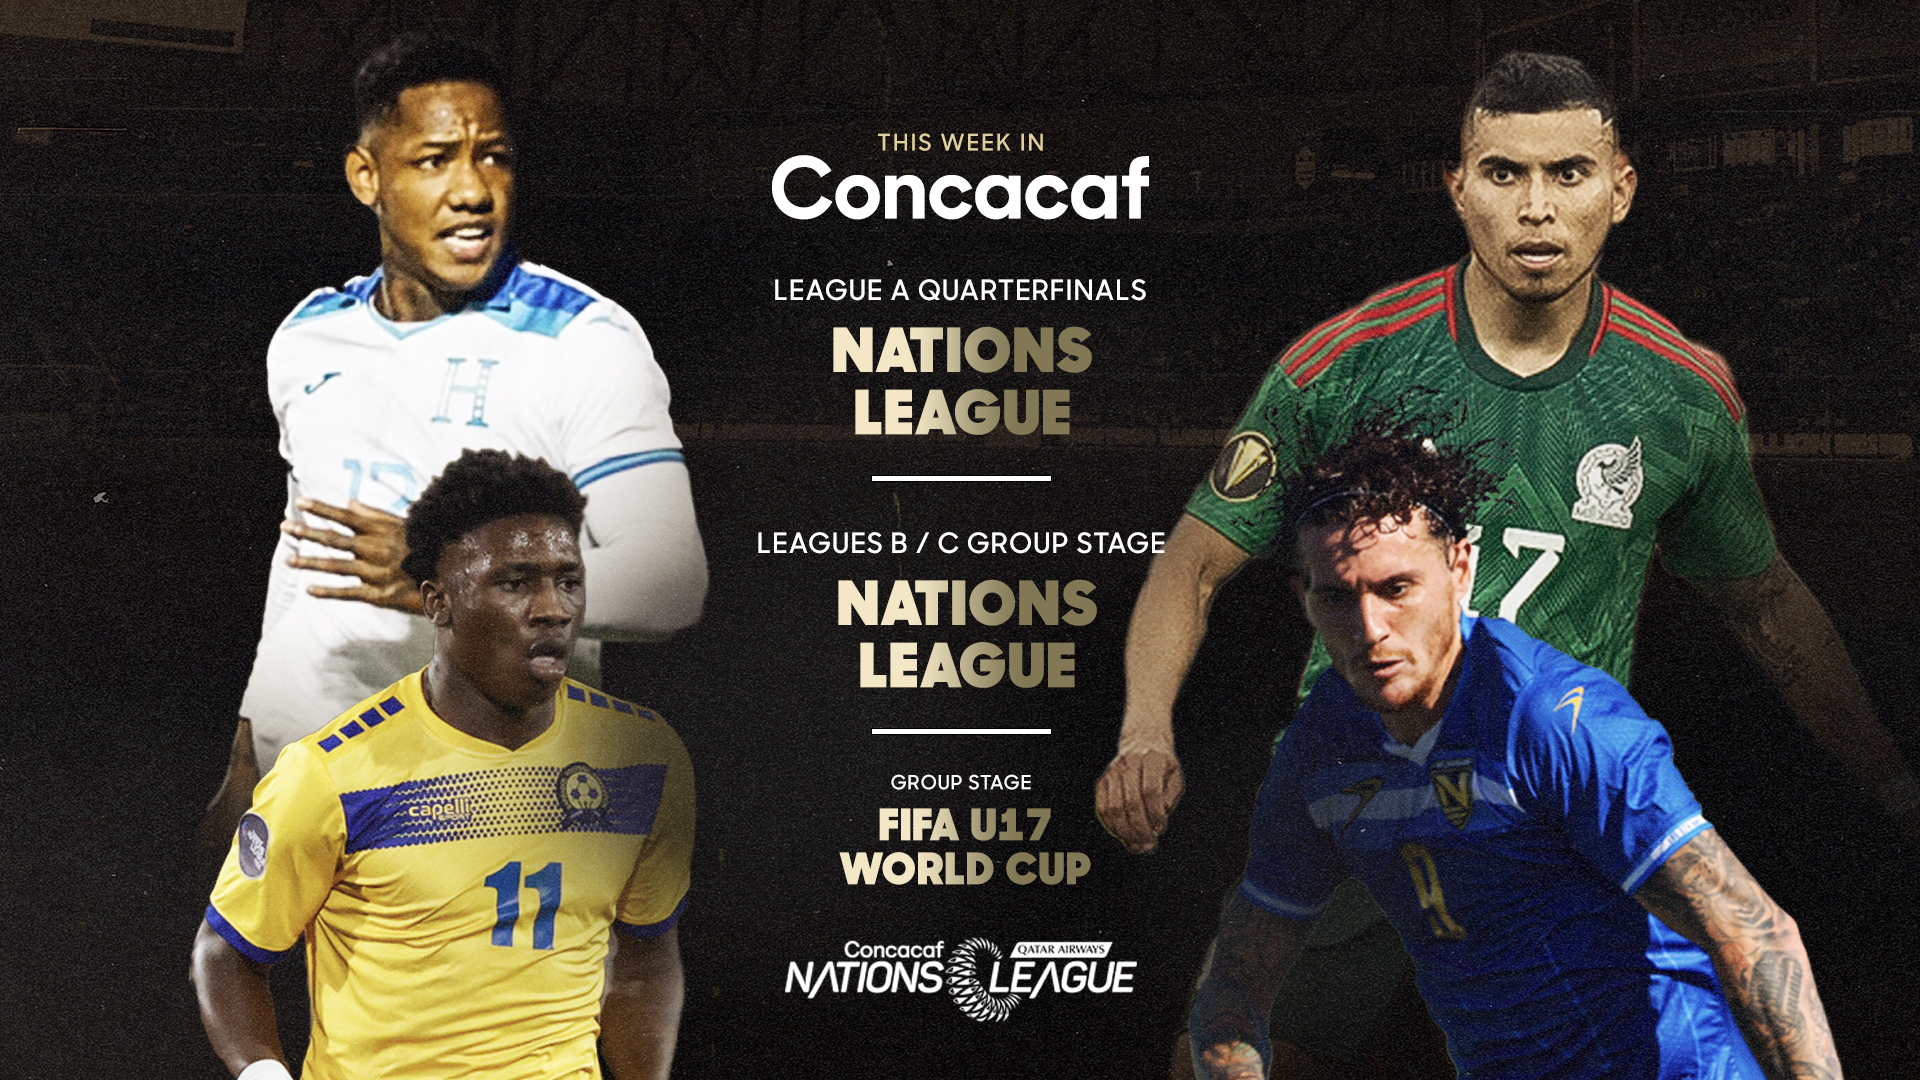 Liga de Naciones Concacaf: Partidos para hoy 17 de octubre